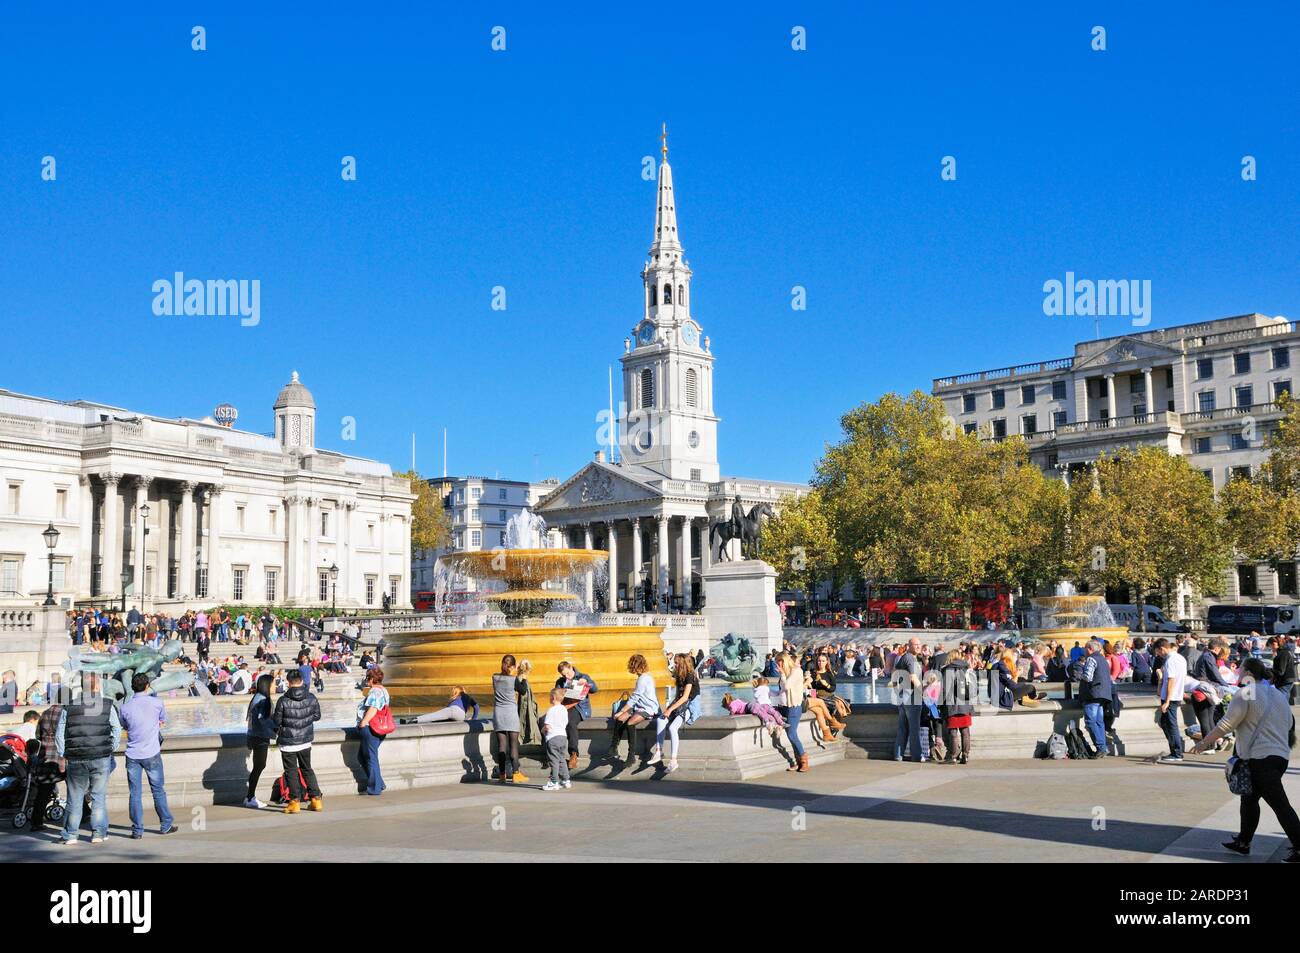 Turistas sentados alrededor de las fuentes en una soleada Plaza Trafalgar con San Martín en La iglesia De Los Campos en el fondo, Londres, Inglaterra, Reino Unido Foto de stock